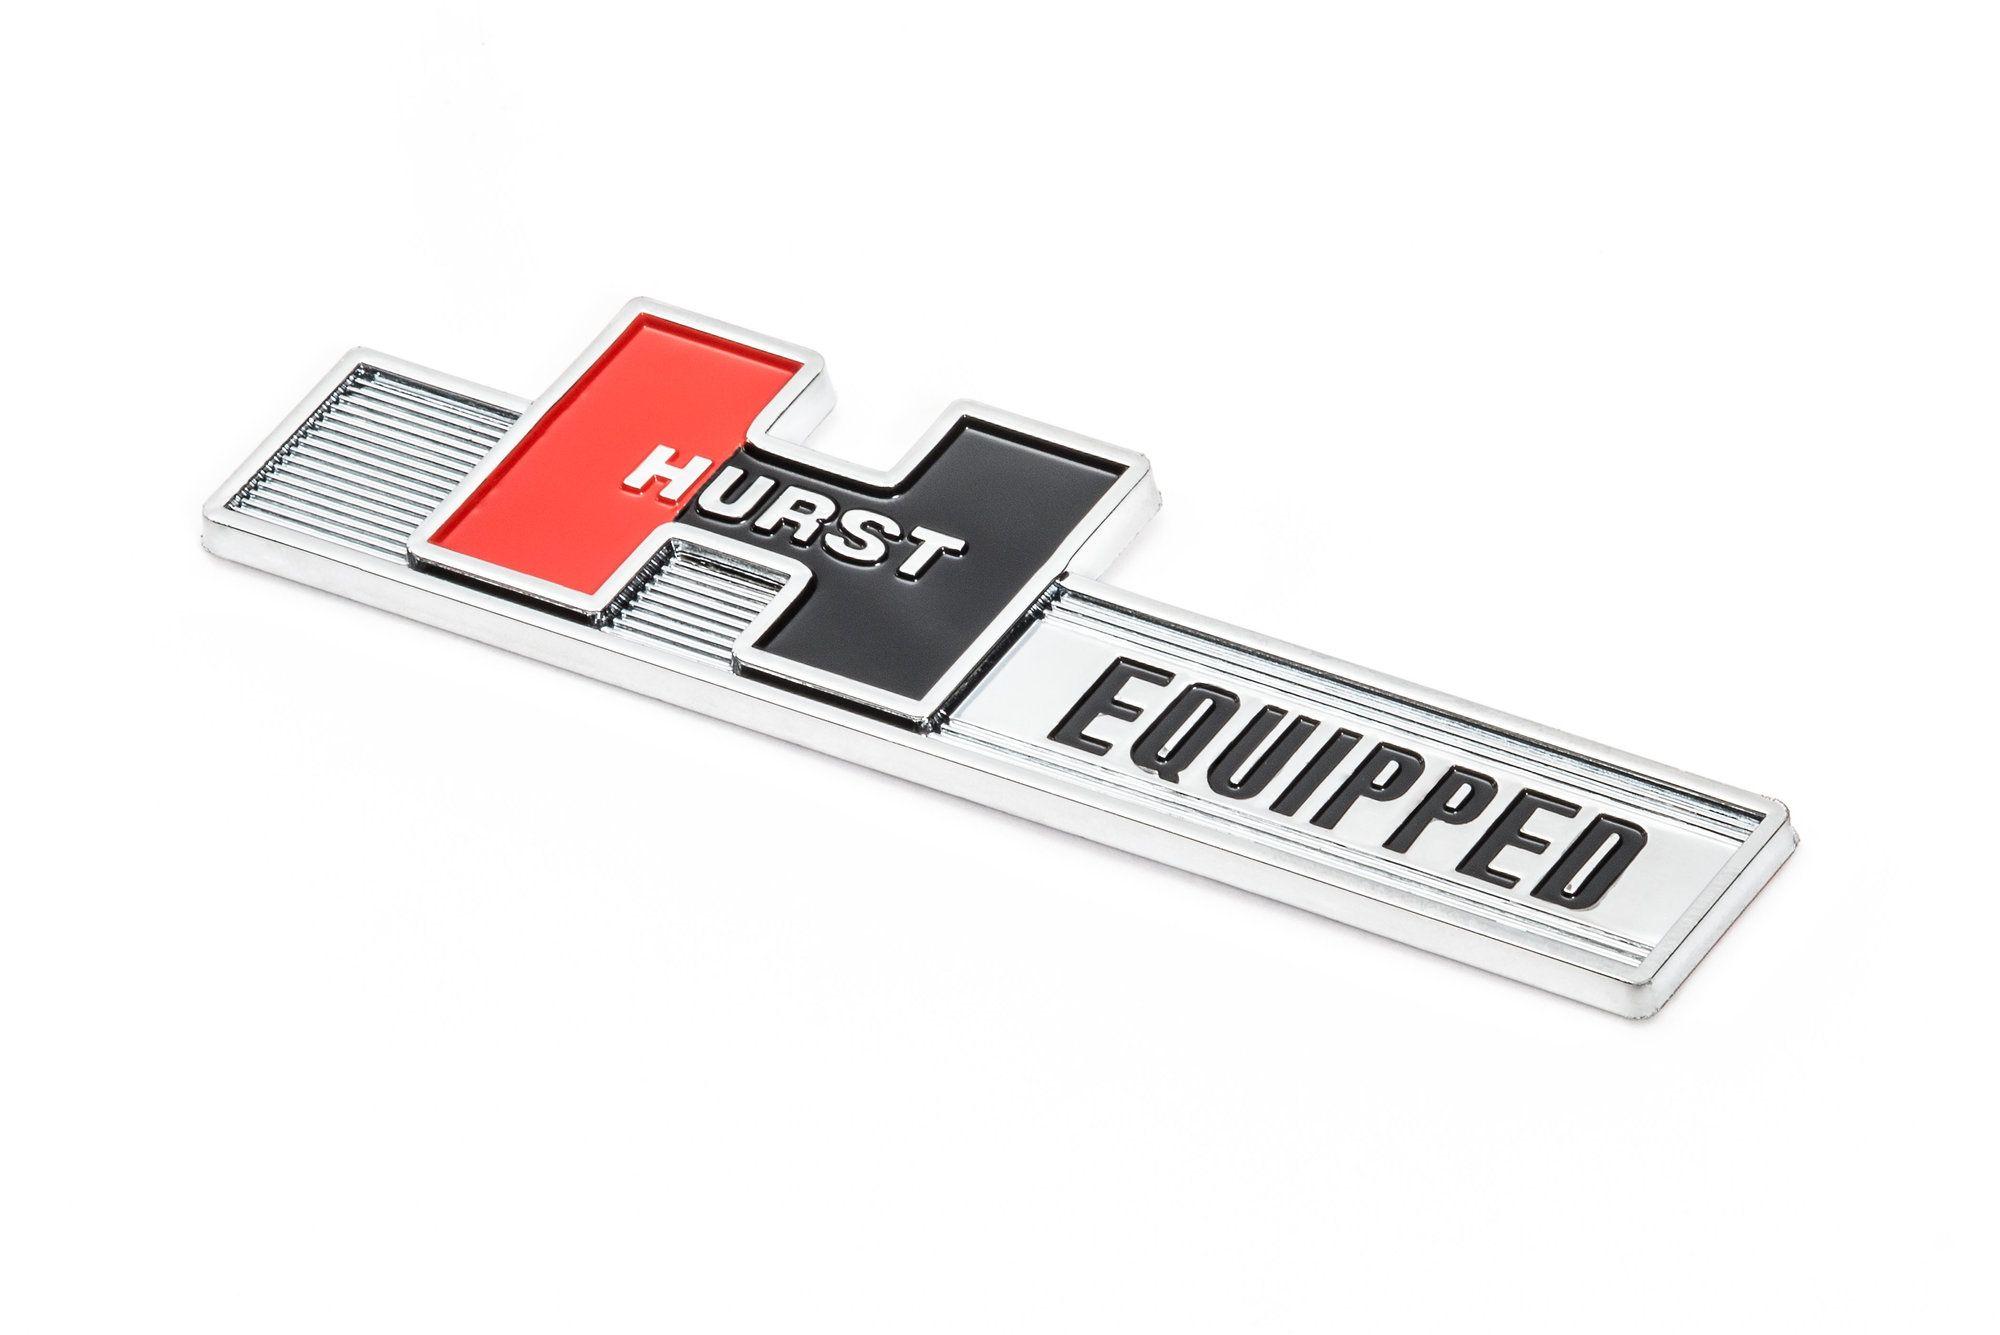 Hurst Logo - Hurst Shifters 136 1000 Hurst Equipped Emblem